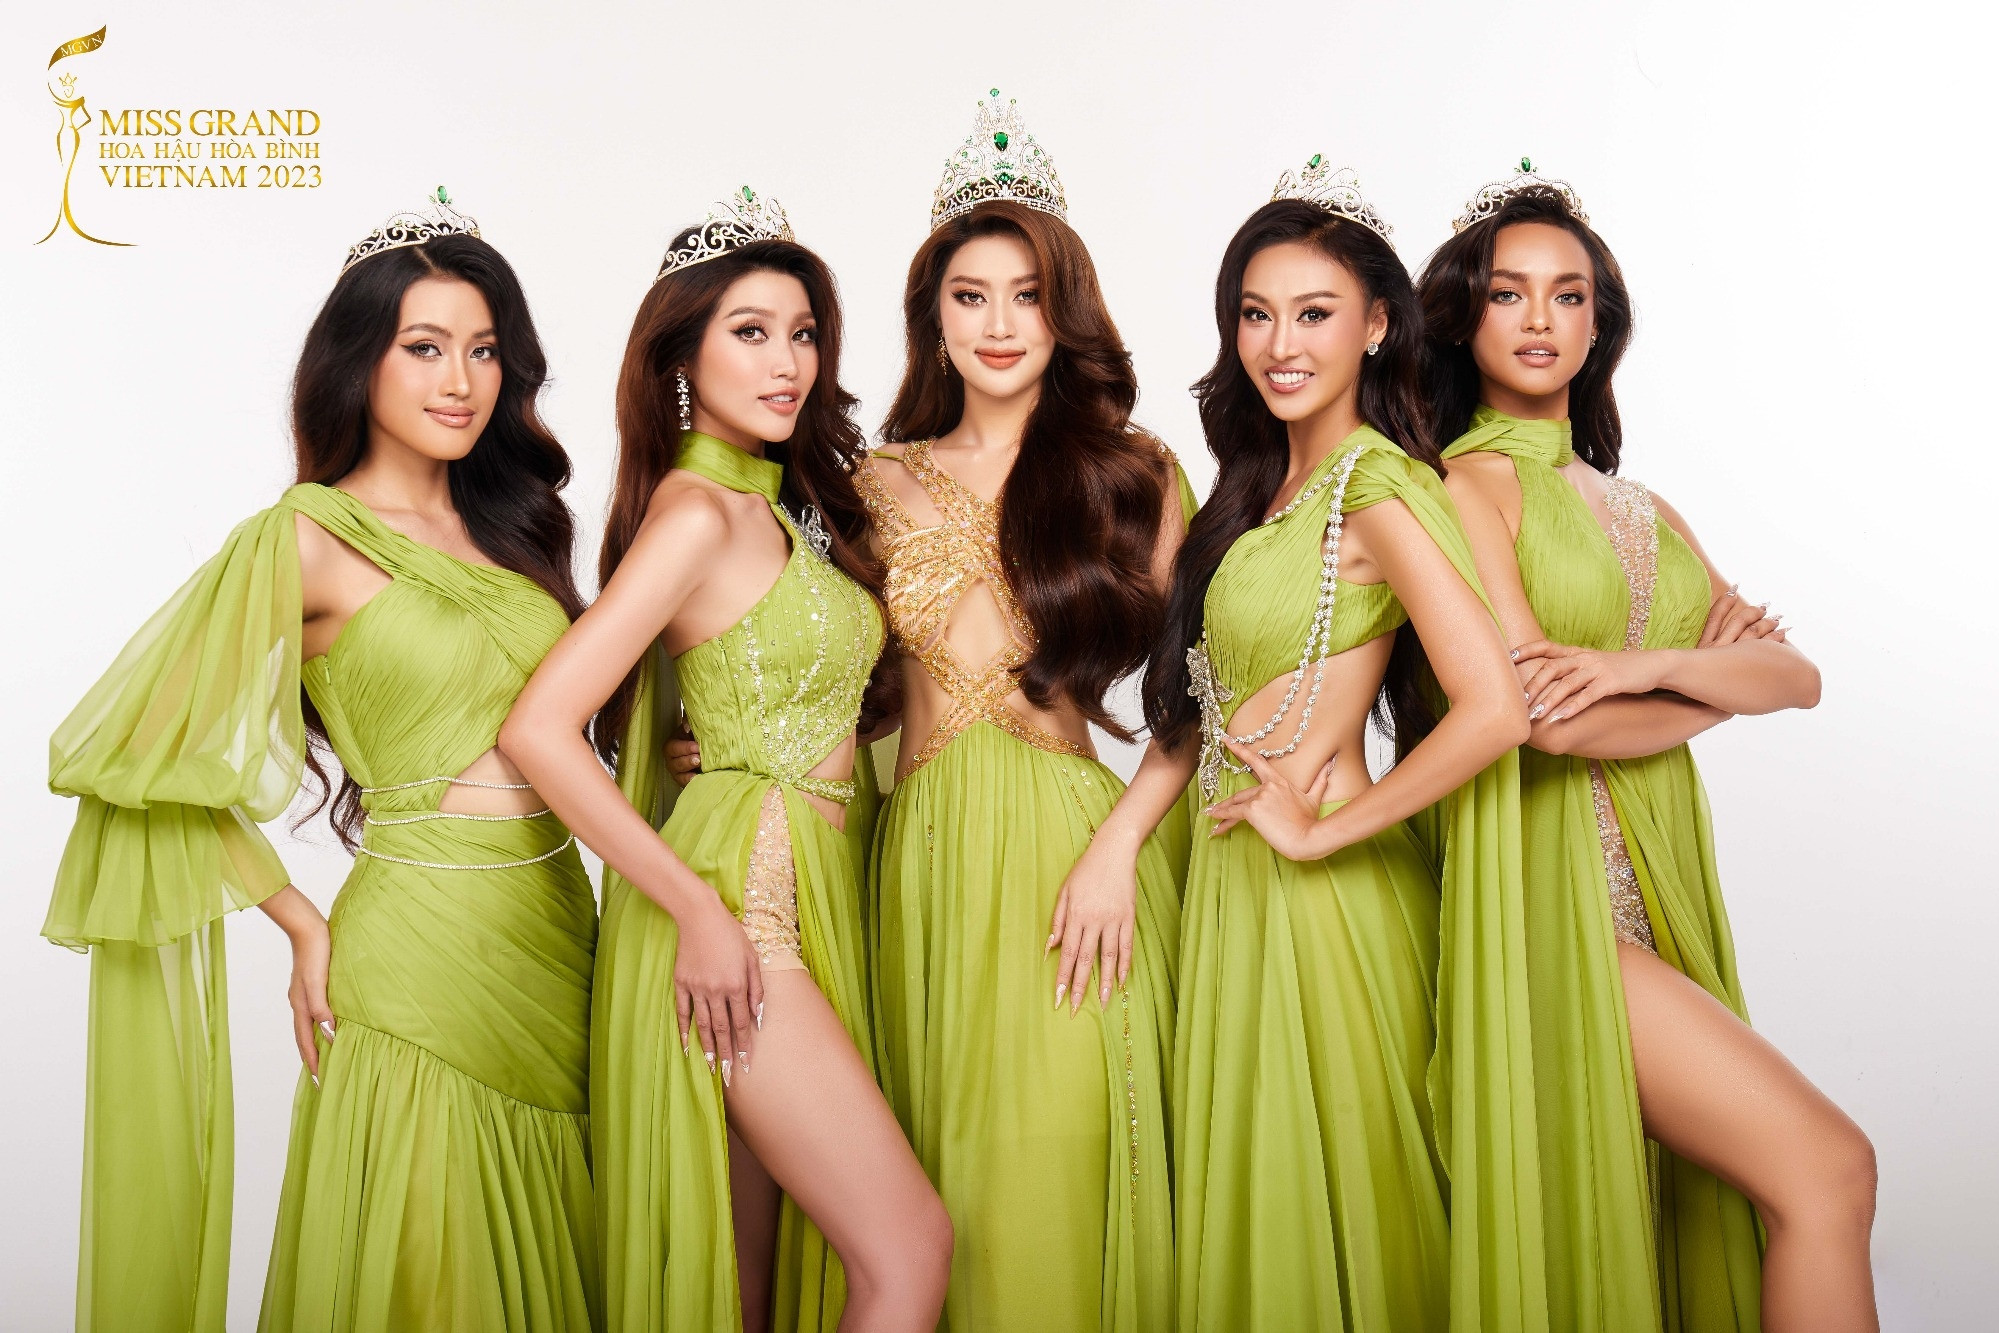 Nhan sắc thăng hạng của Top 5 Miss Grand Vietnam 2022